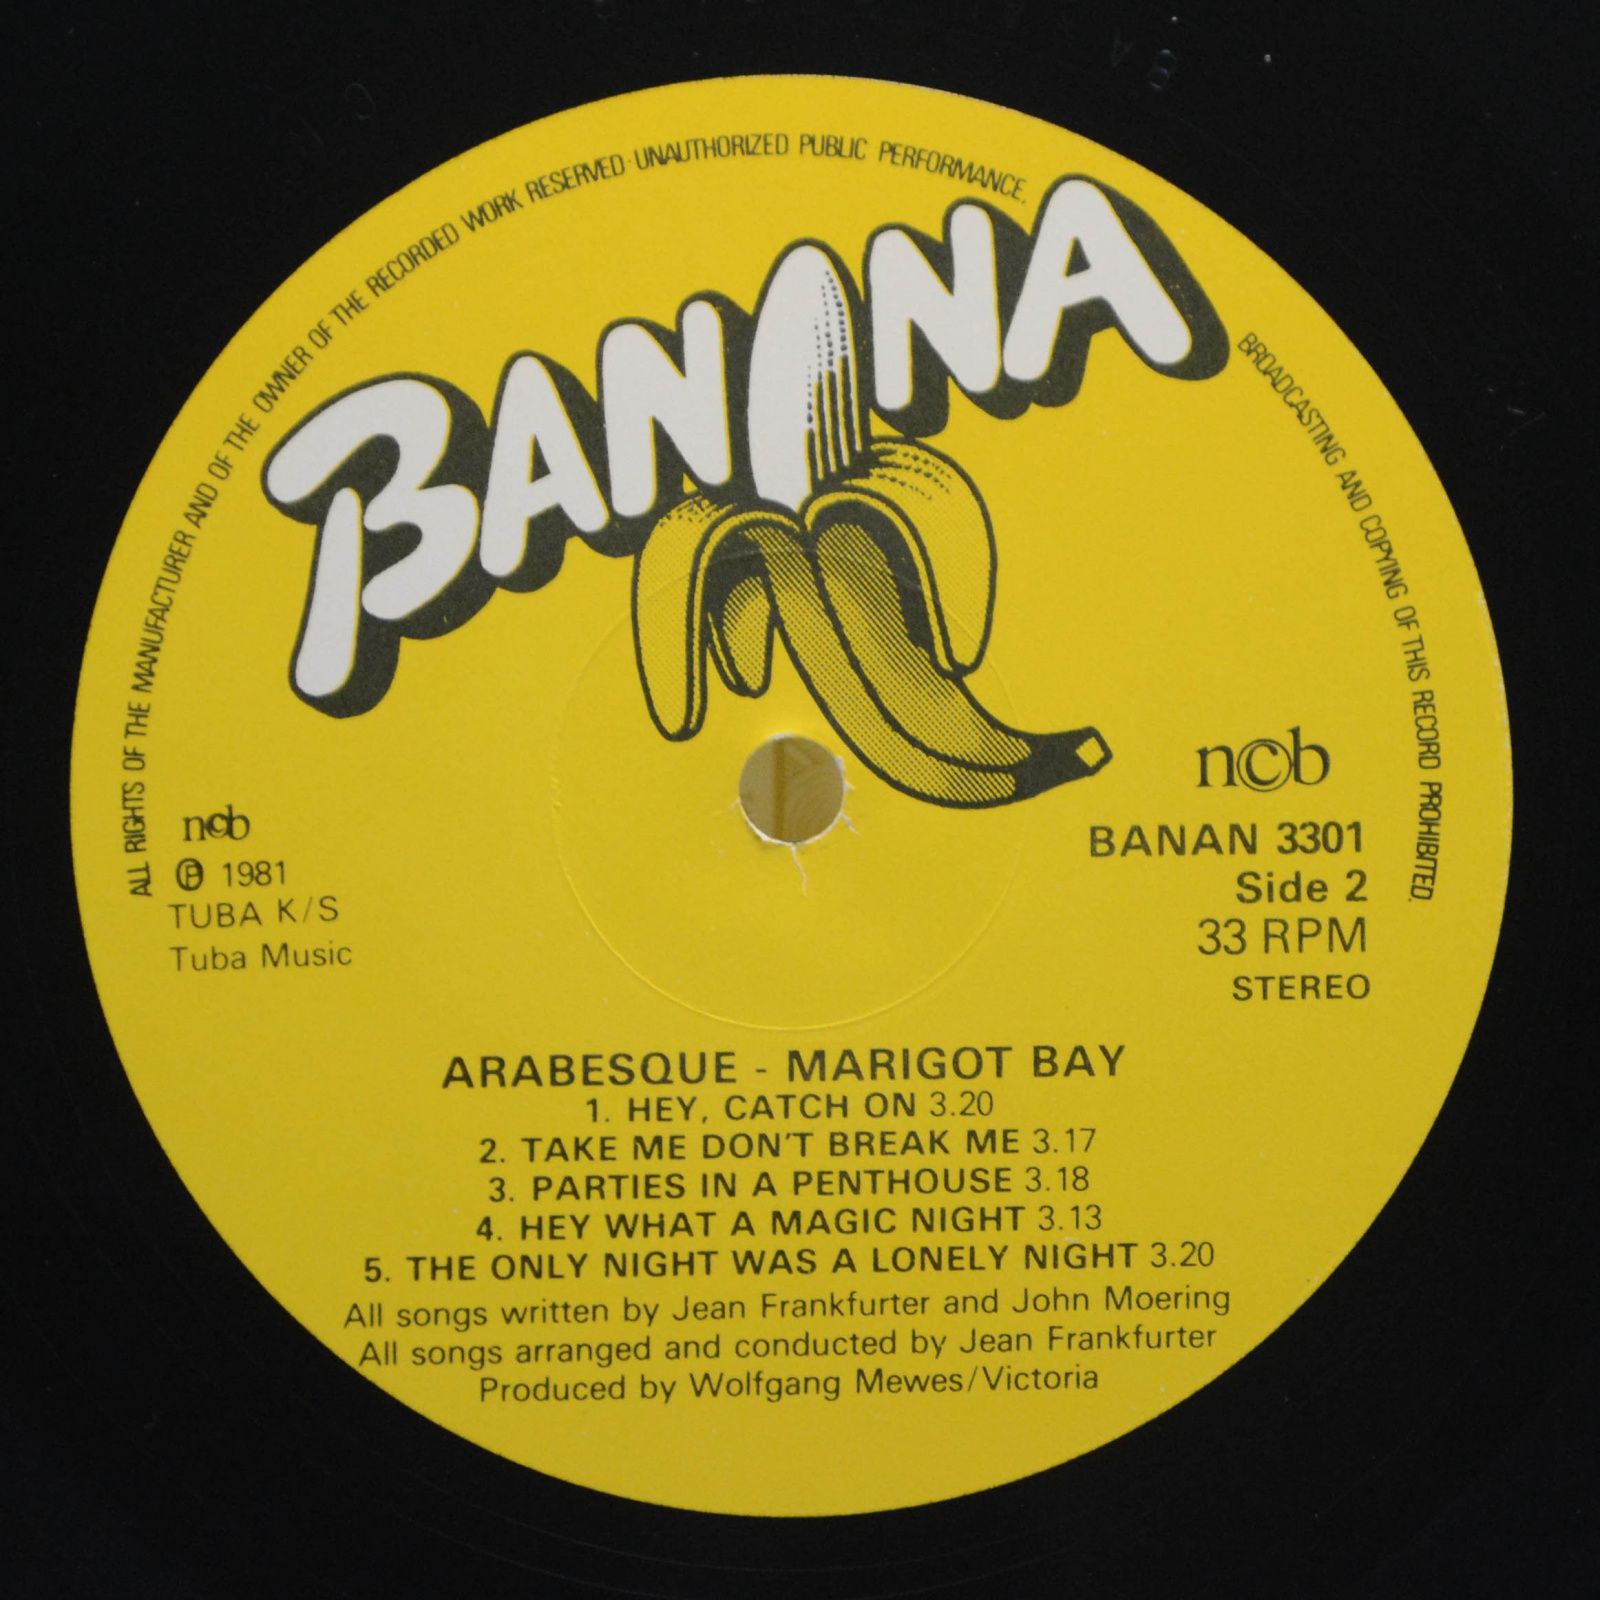 Arabesque — Marigot Bay, 1981